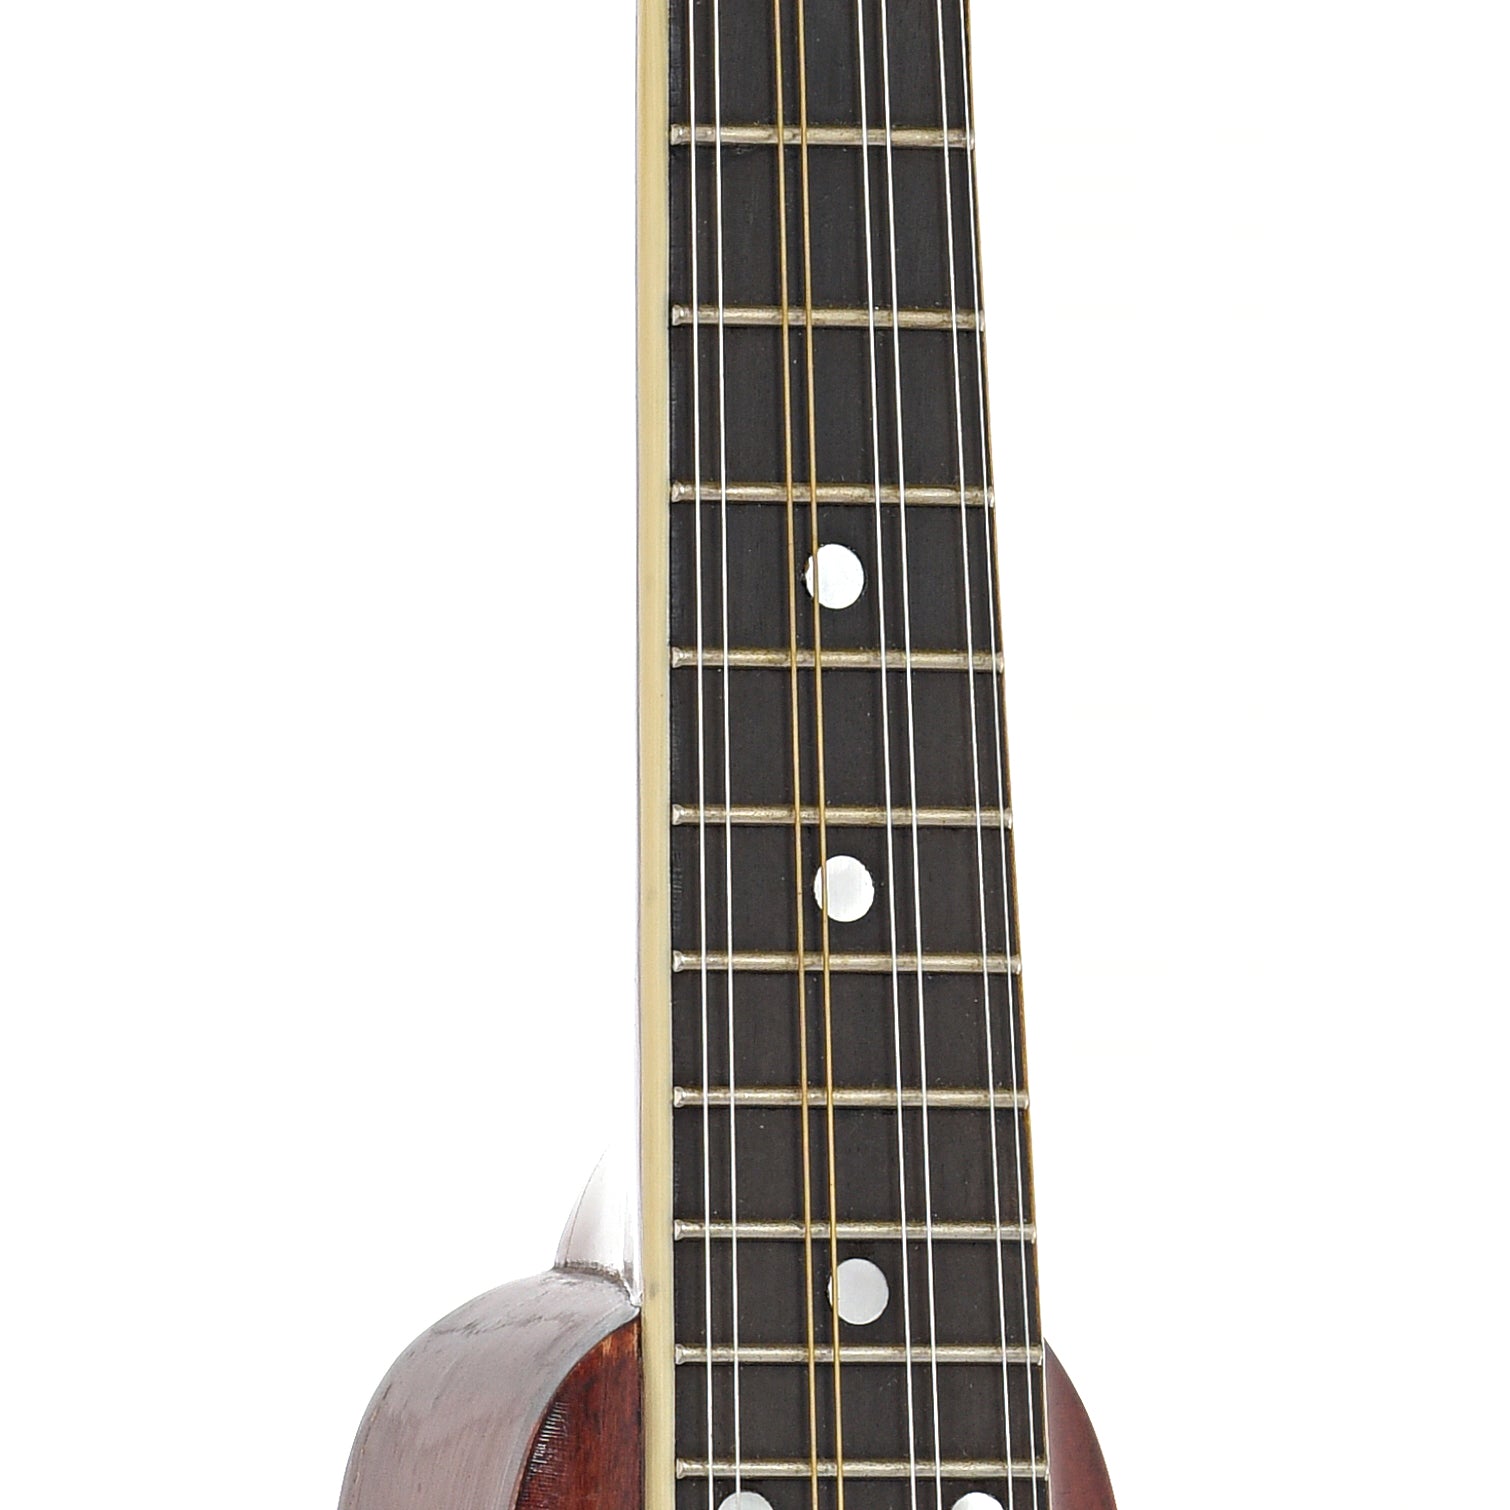 Fretboard of Gibson A-1 Mandolin